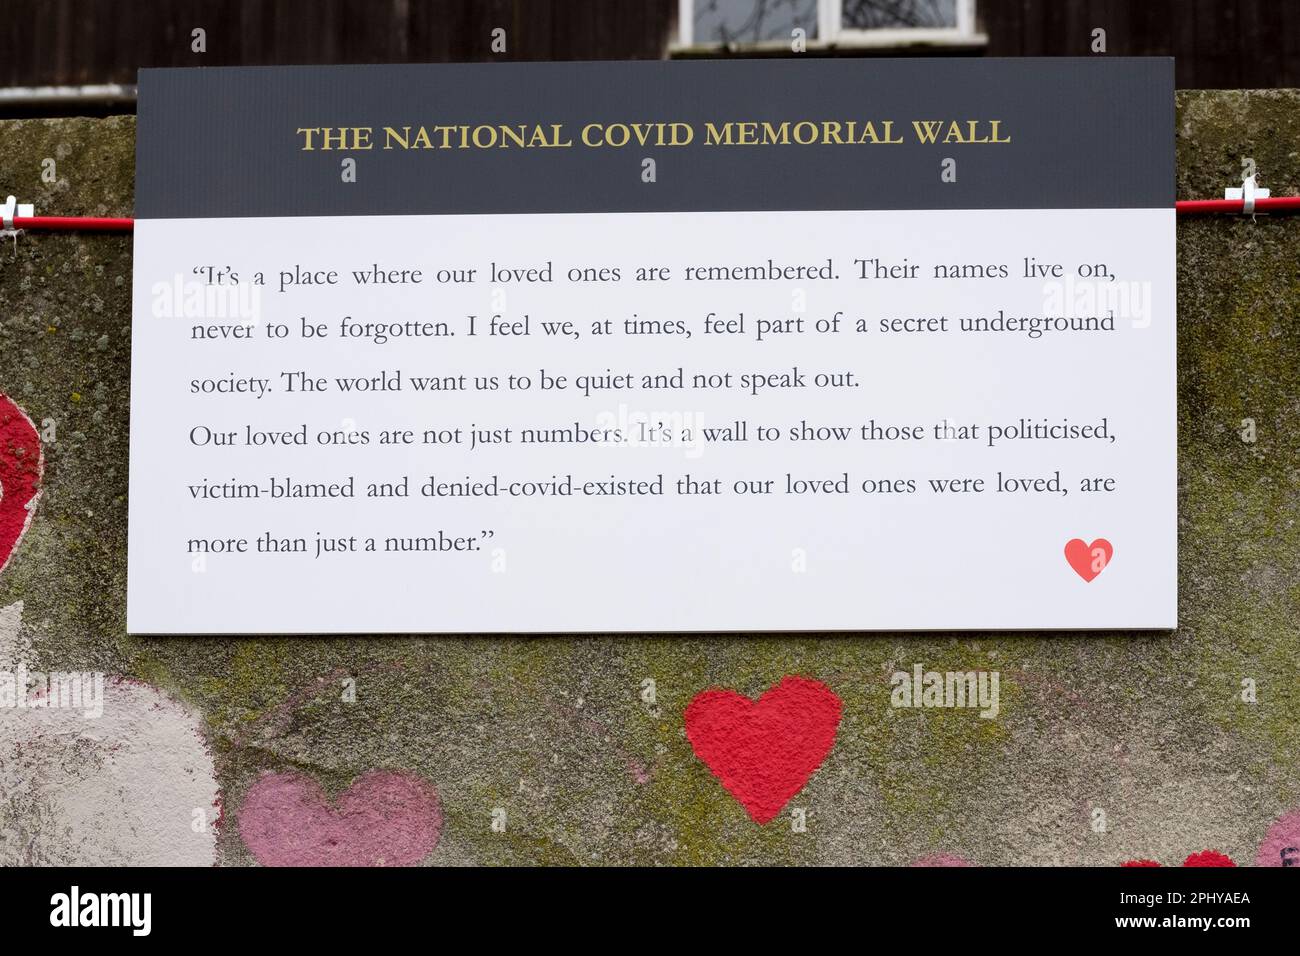 Plaque temporaire à l'aide d'une citation d'une personne endeuillée lors de la commémoration du deuxième anniversaire du mur commémoratif national du COVID. Banque D'Images